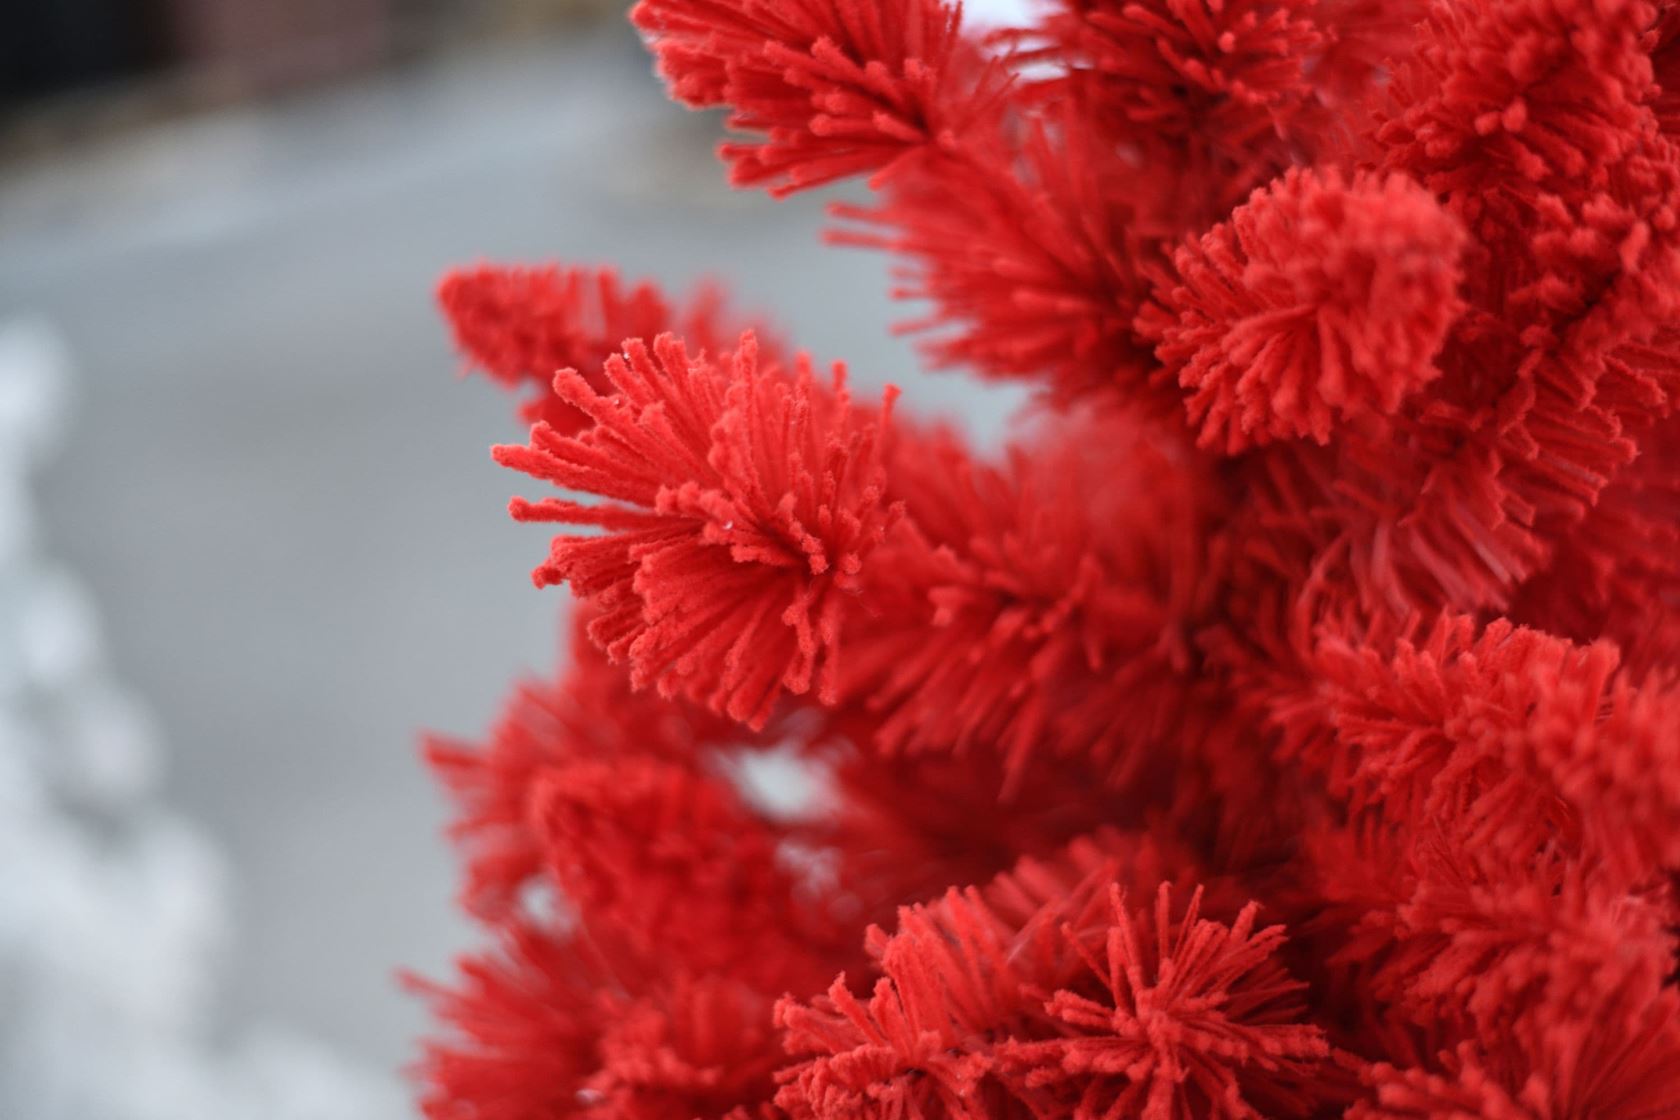 Teddy-Red-kunstkerstboom-180-cm-rood-658-tips-sneeuw-metalen-voet